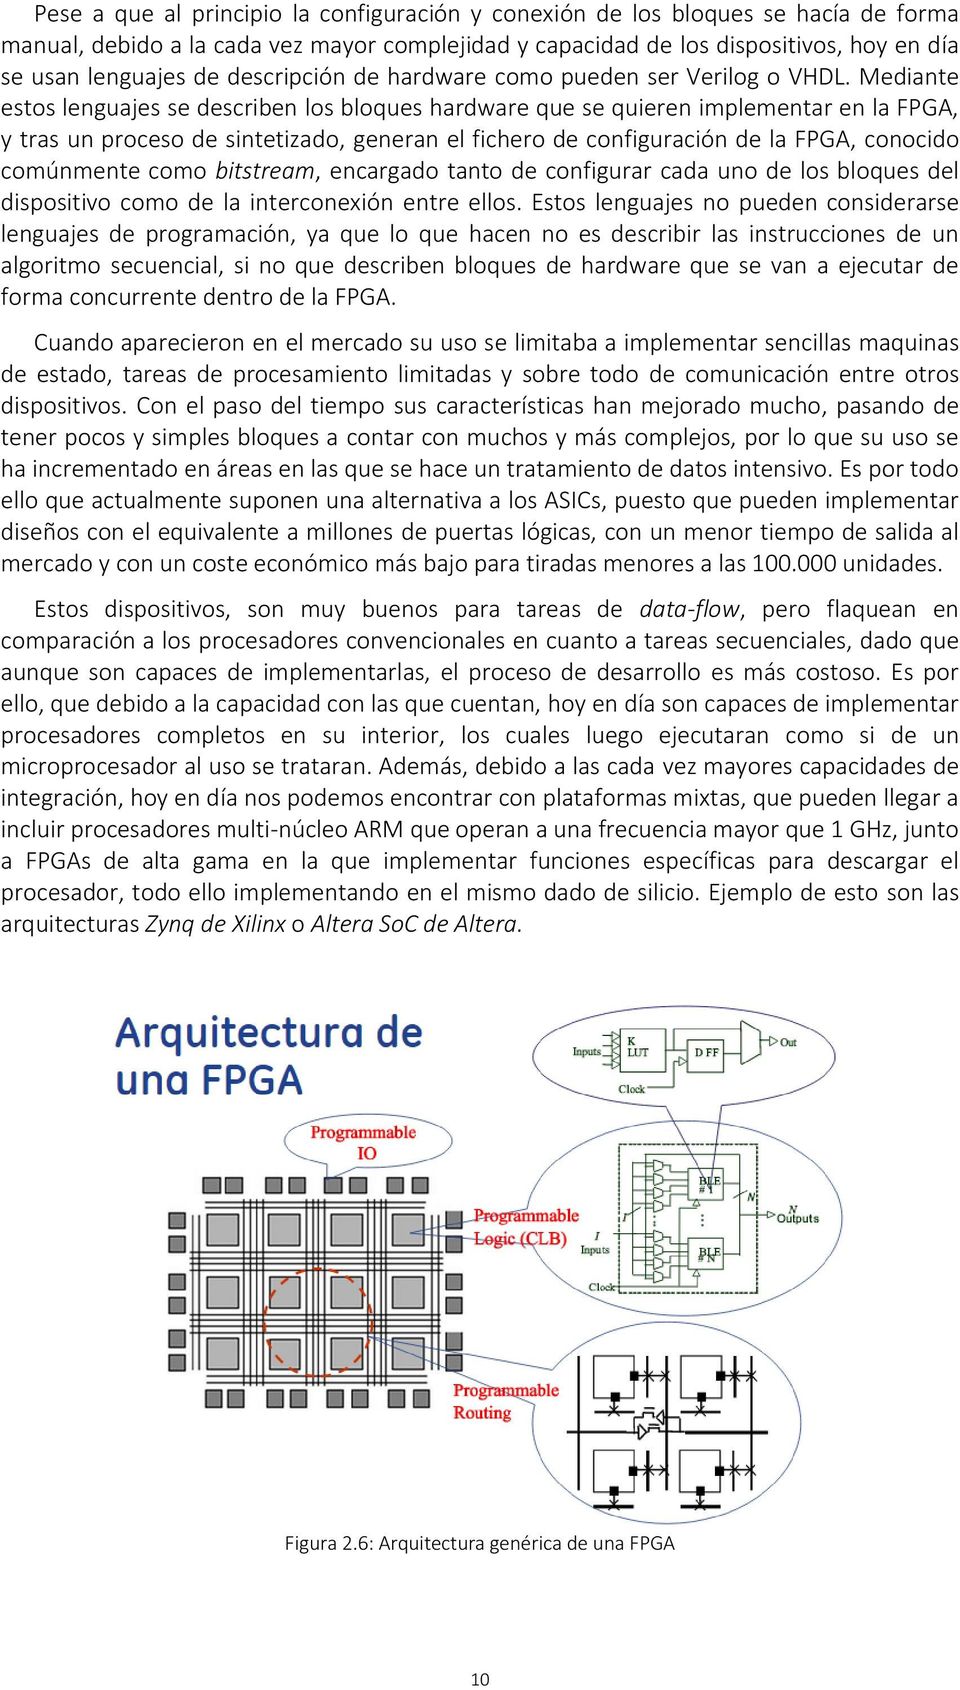 Mediante estos lenguajes se describen los bloques hardware que se quieren implementar en la FPGA, y tras un proceso de sintetizado, generan el fichero de configuración de la FPGA, conocido comúnmente